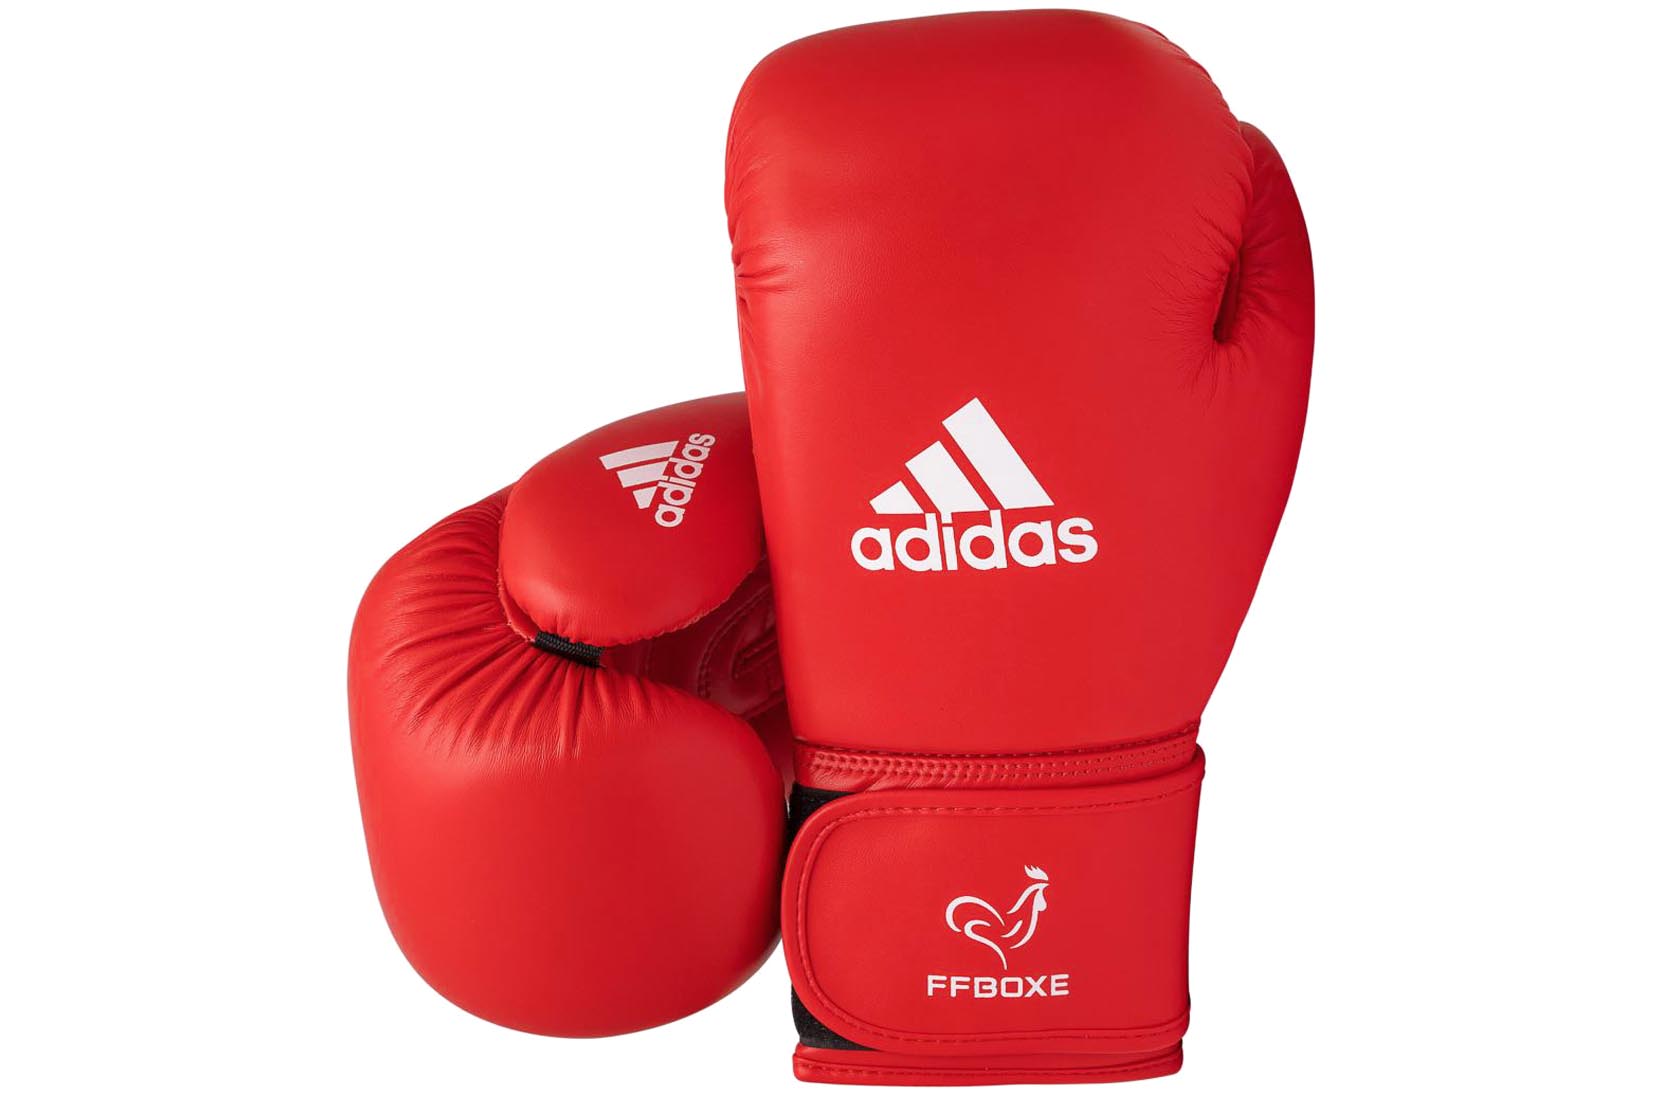 Pack de Boxe enfant ( sac de frappe + gants) Adidas - Noir/Rouge